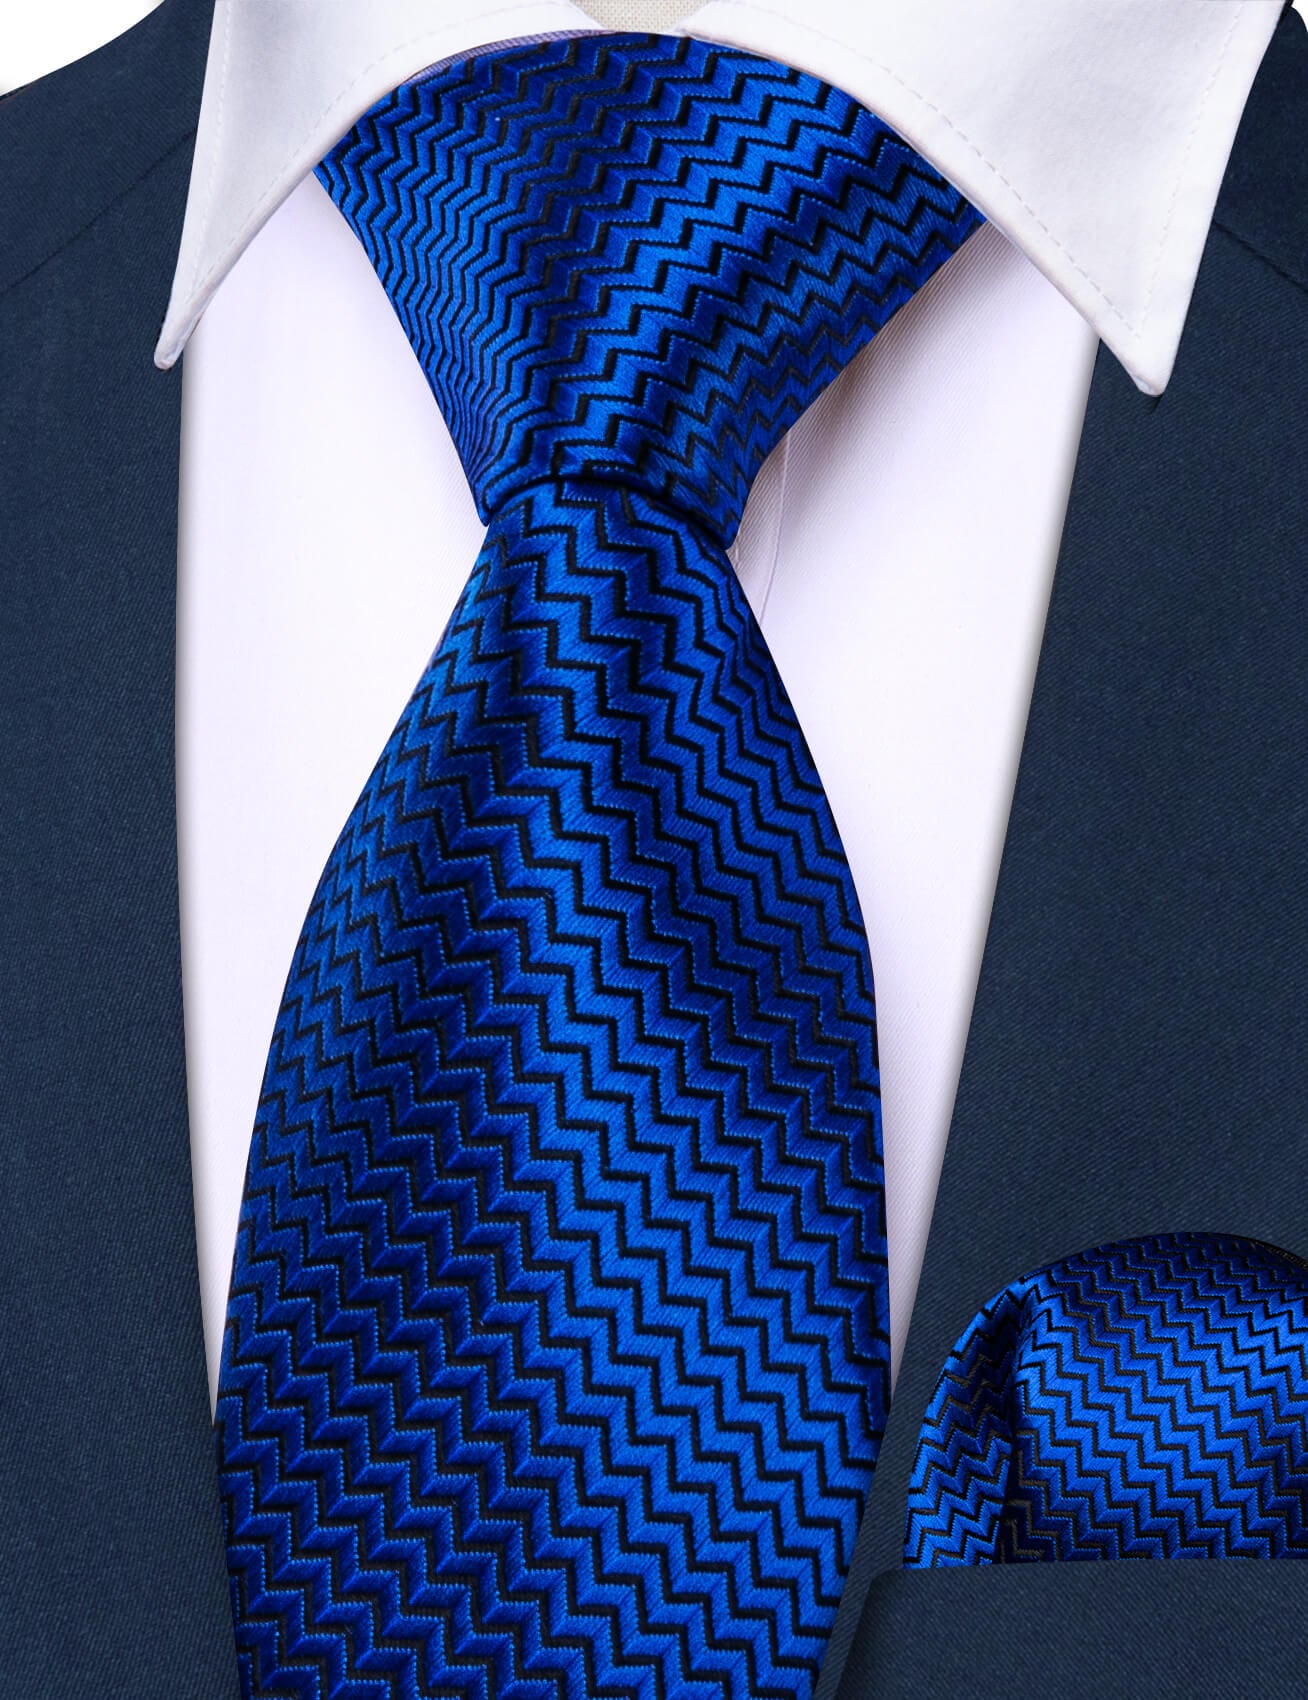 Barry.wang Kids Tie Cobalt Blue Geometry Children's Silk Tie Hanky Set